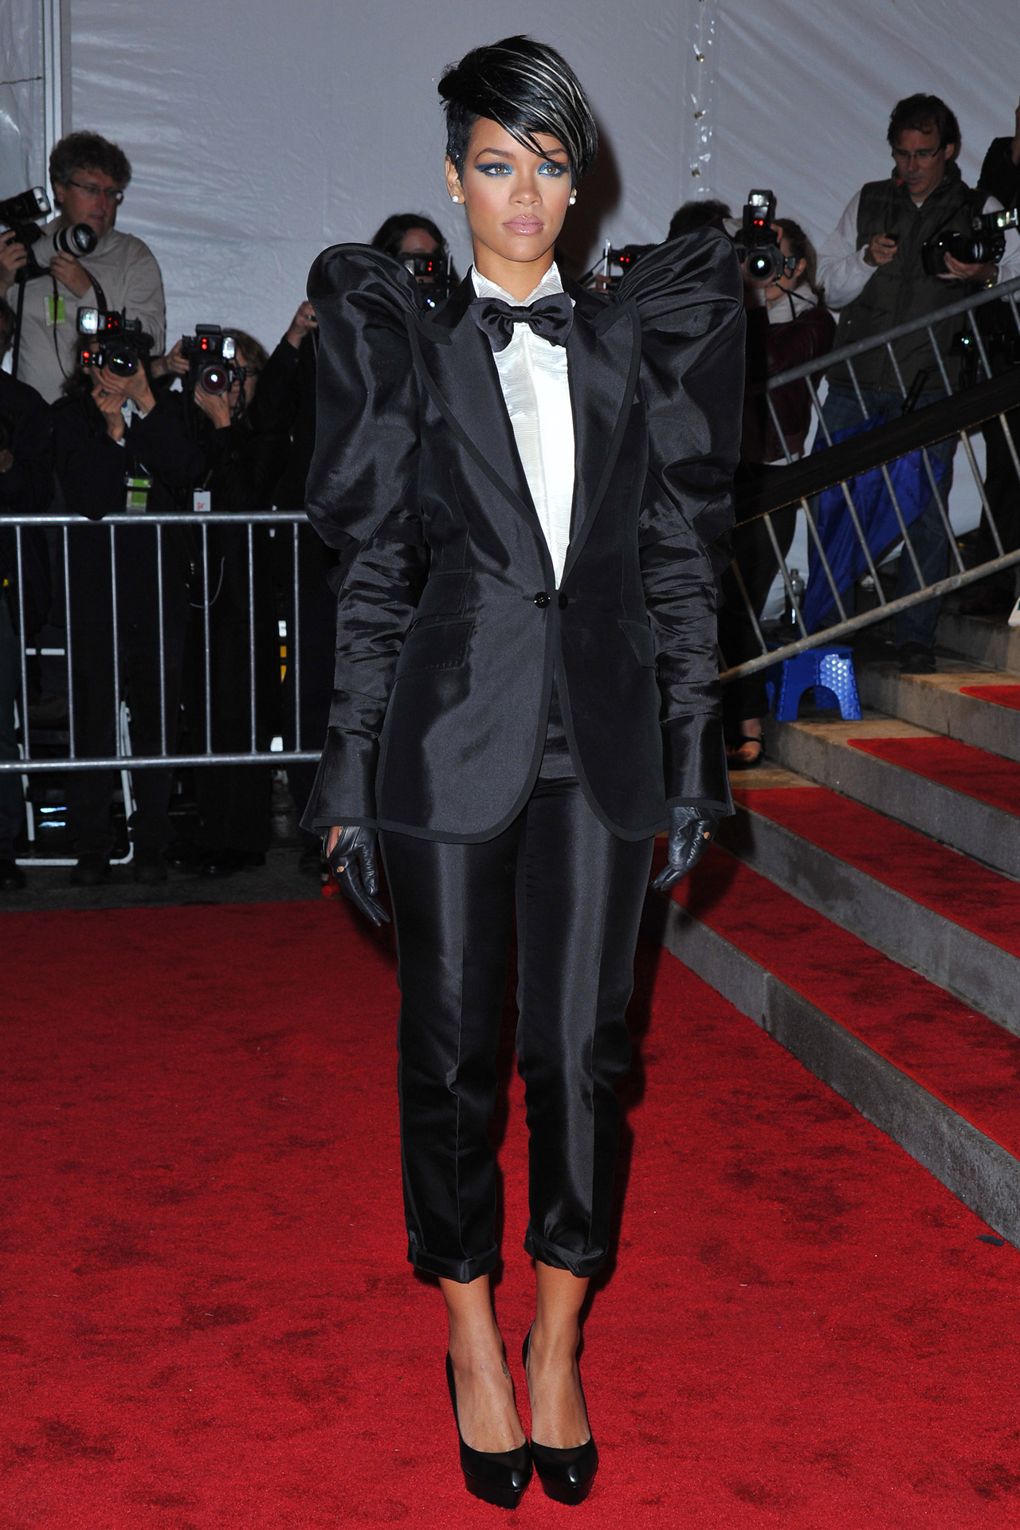 Tại MET Gala 2009, Rihanna gây sốc với bộ tuxedo của Dolce & Gabbana. Nhiều ý kiến trái chiều được đưa ra về trang phục này, nhưng không thể phủ nhận rằng đây là một trong những trang phục đáng nhớ nhất trong lịch sử MET Gala.